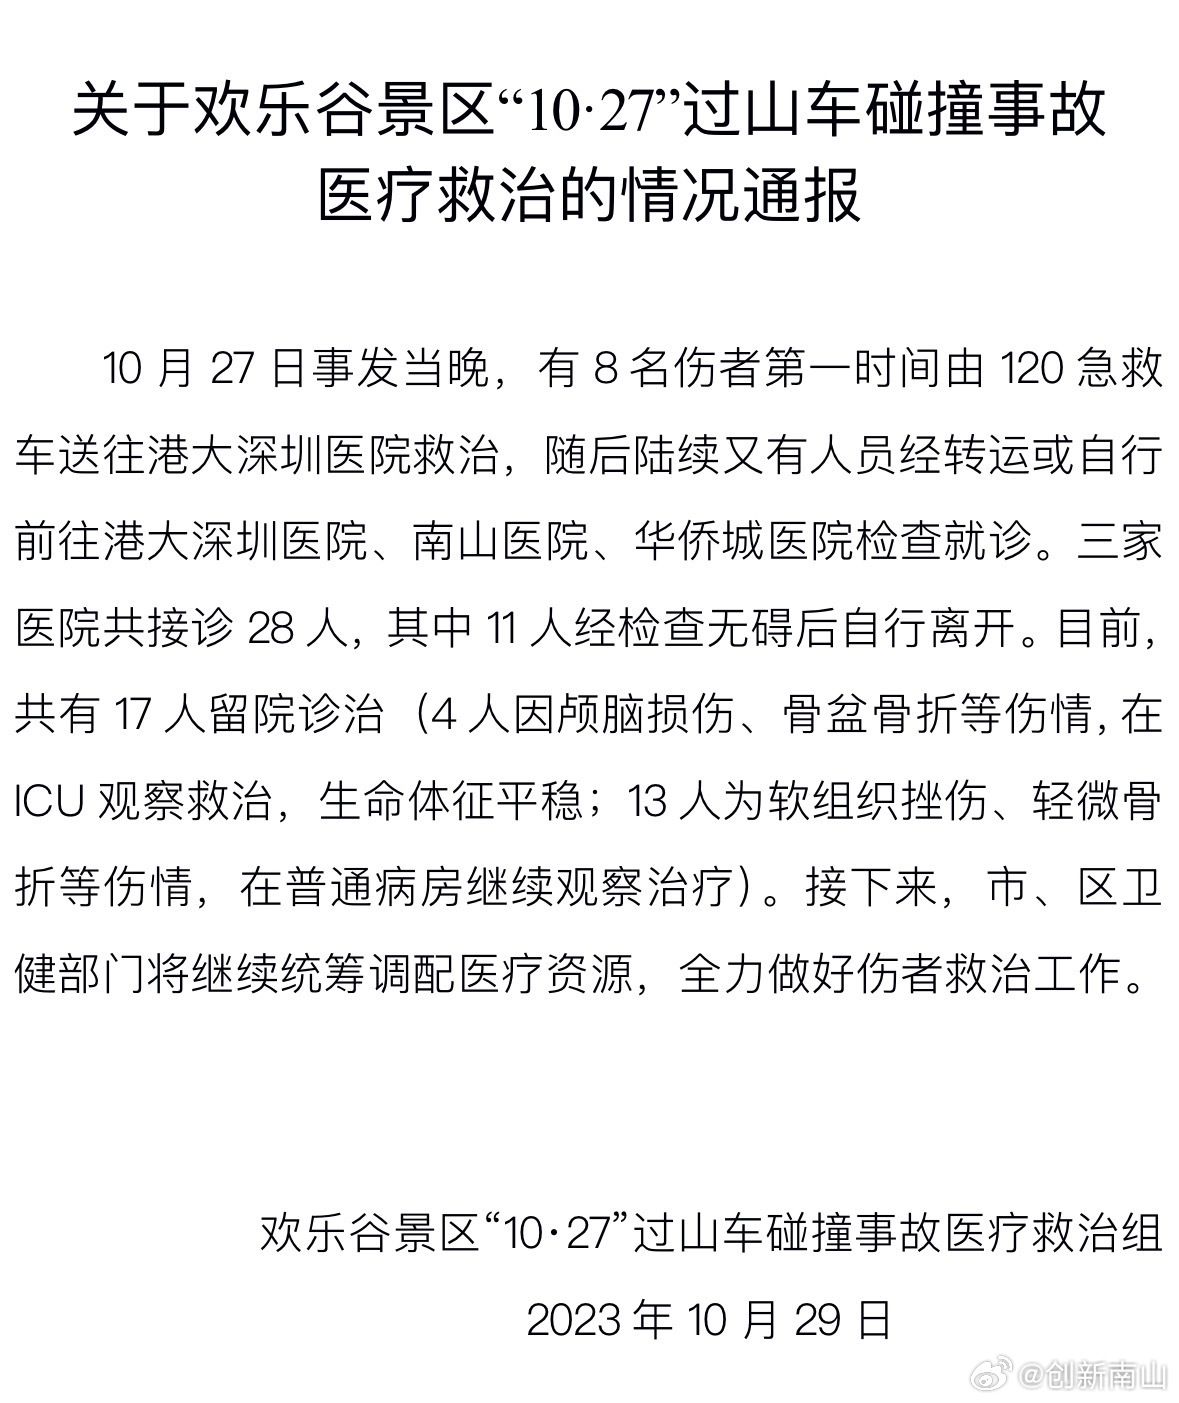 深圳欢乐谷景区过山车磕碰事端已致28人受伤